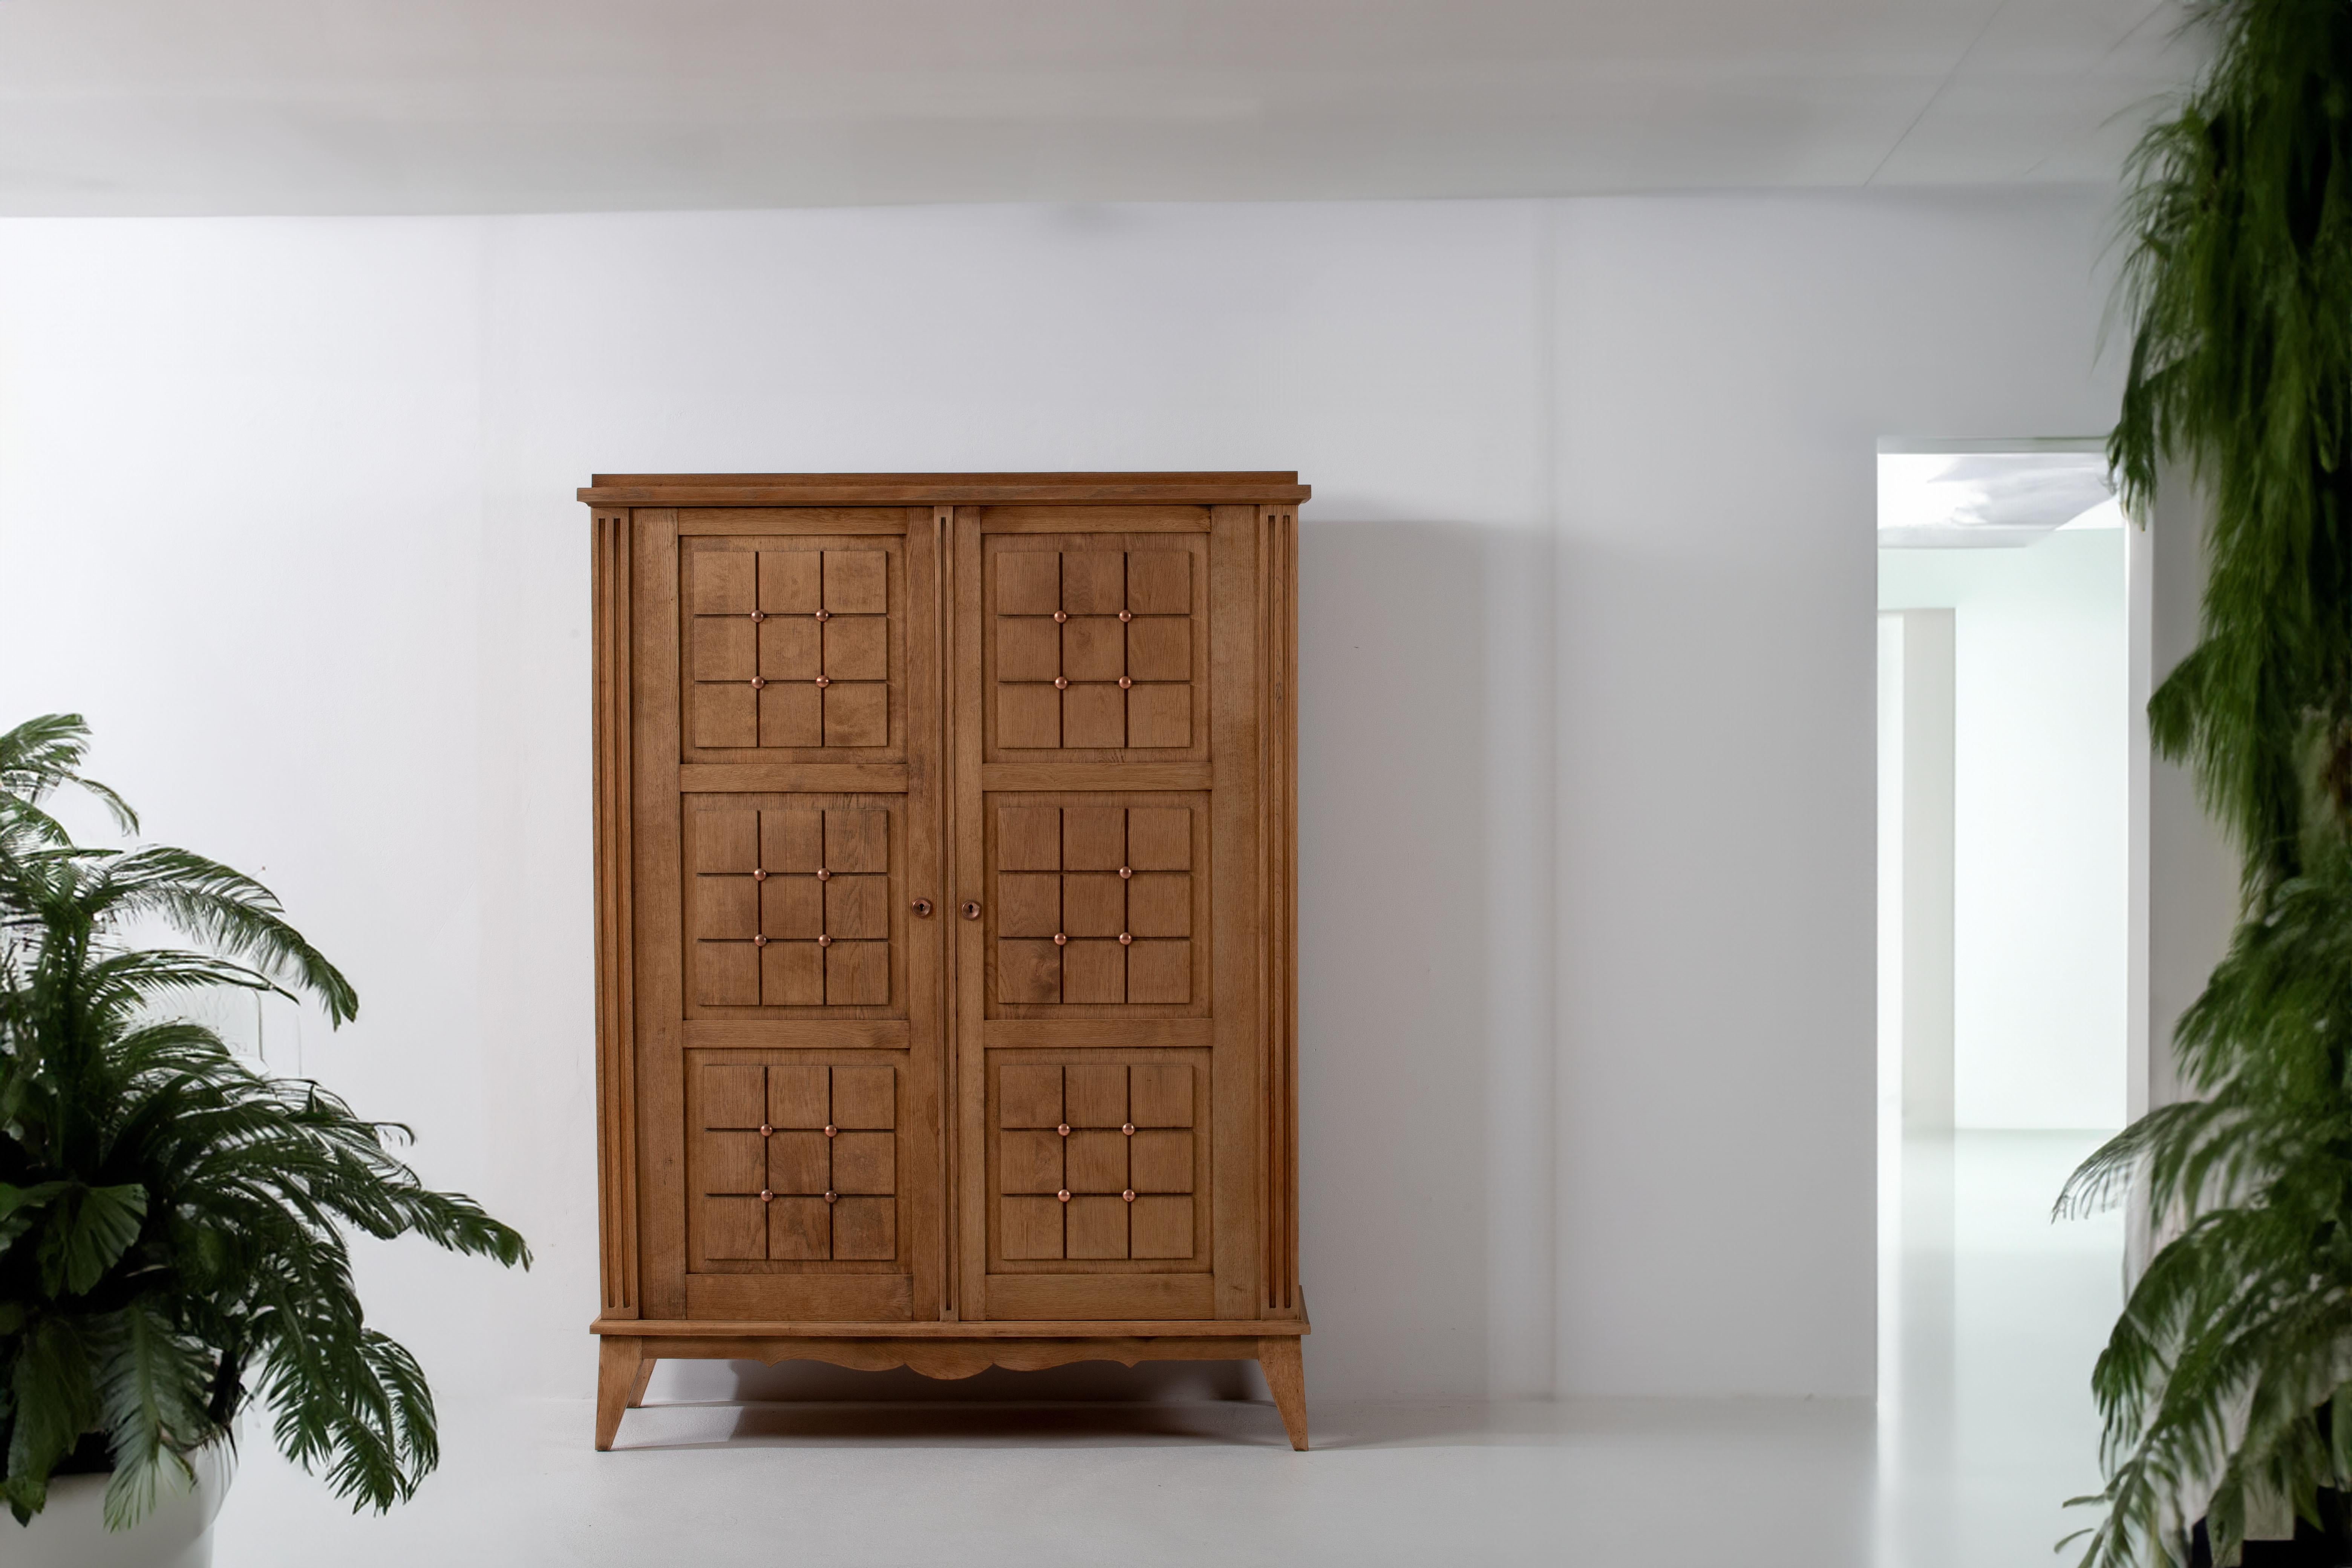 Der Schrank aus massiver Eiche aus den 1950er Jahren besticht durch sein ausgeprägtes quadratisches Muster auf den Türen, das von der kühnen Ästhetik des Brutalismus inspiriert ist. Die mit viel Liebe zum Detail gefertigte Garderobe versprüht einen